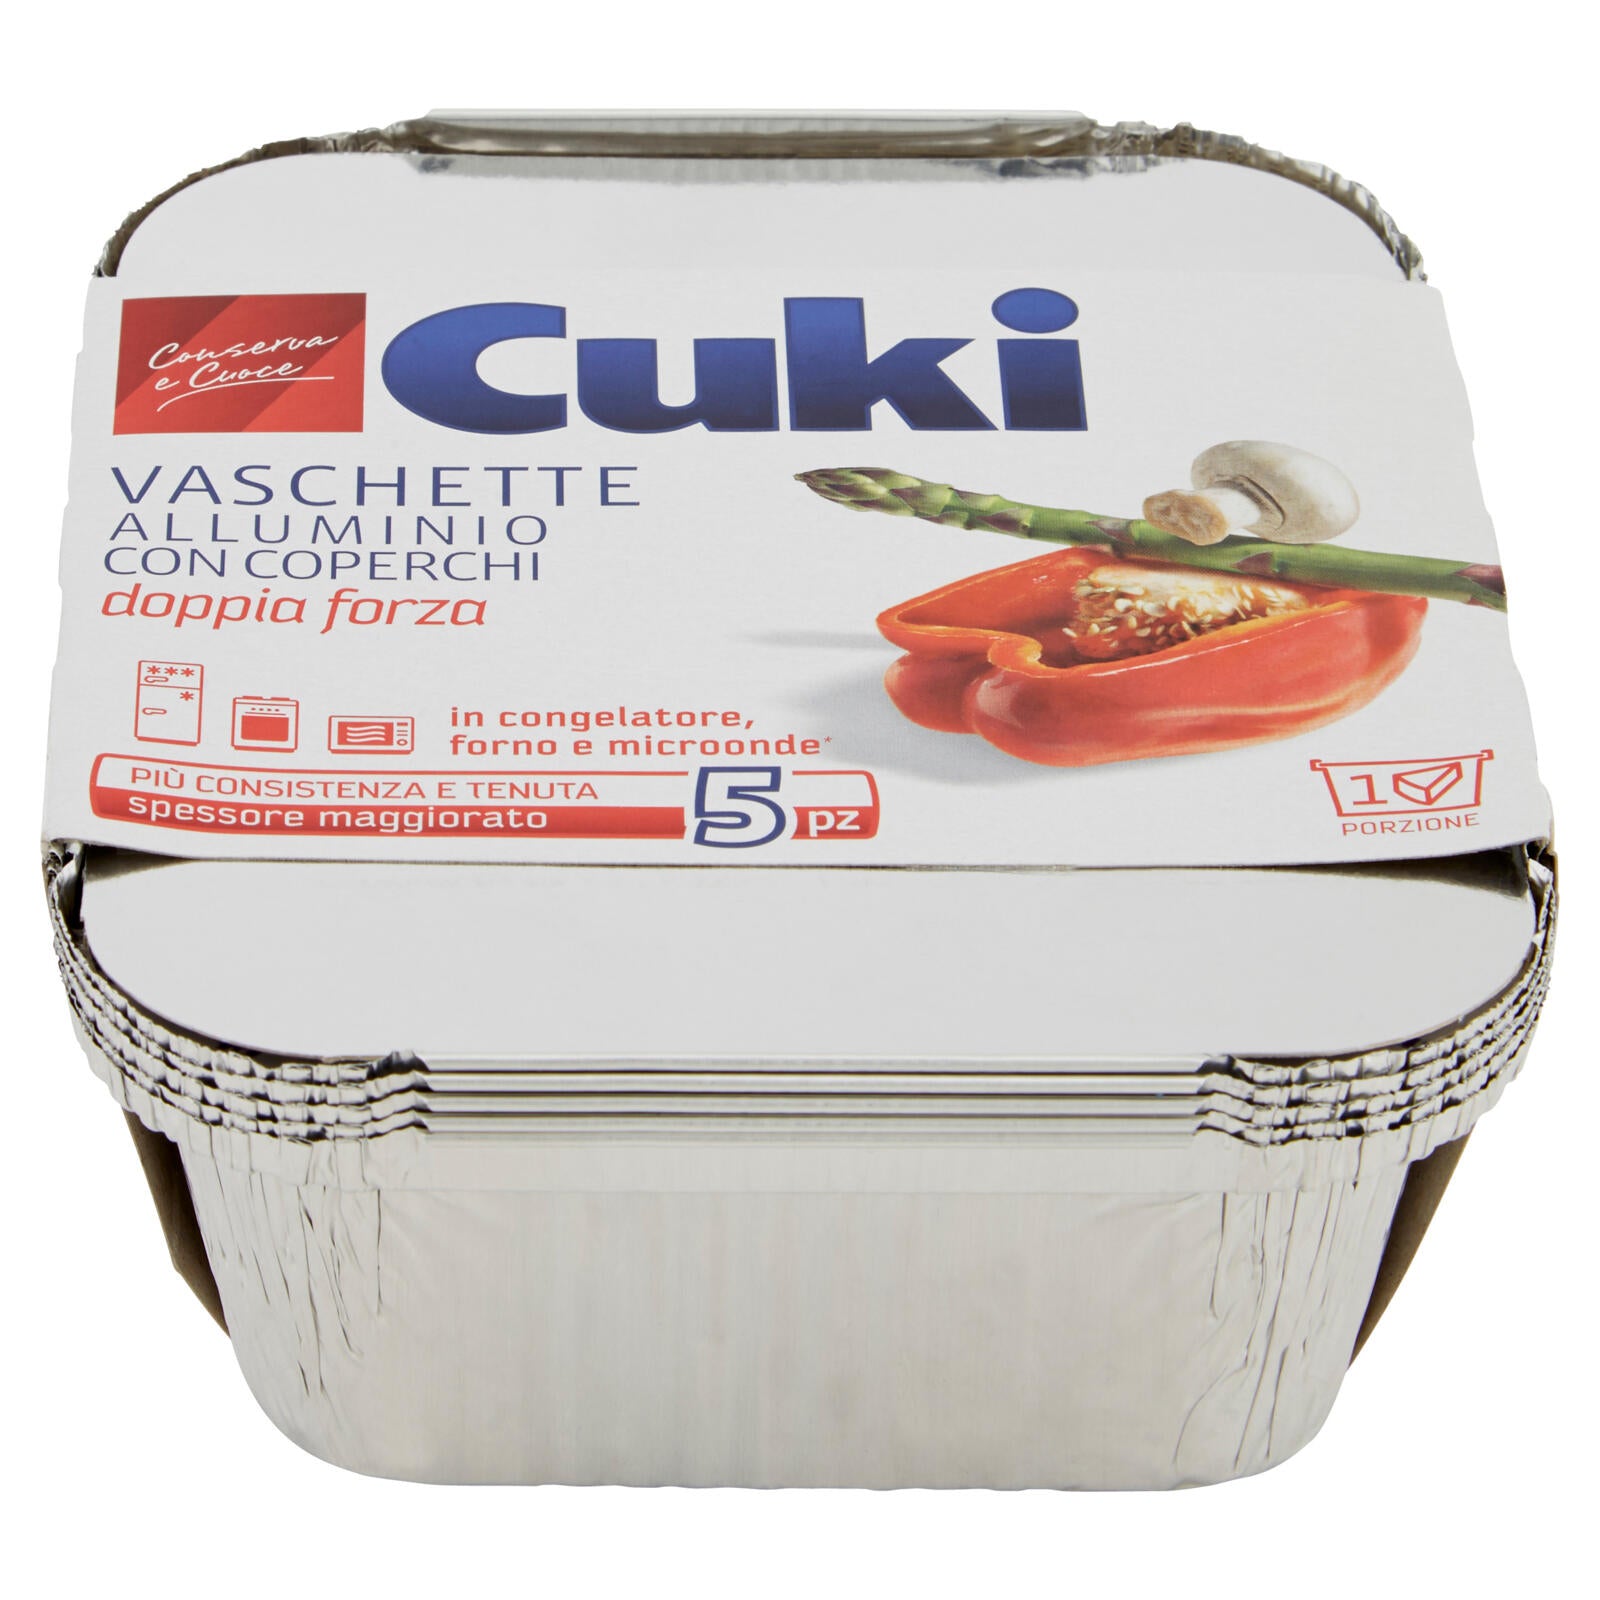 Cuki Conserva e Cuoce Vaschette alluminio con coperchi 1 porzione - 5 pz (R31)